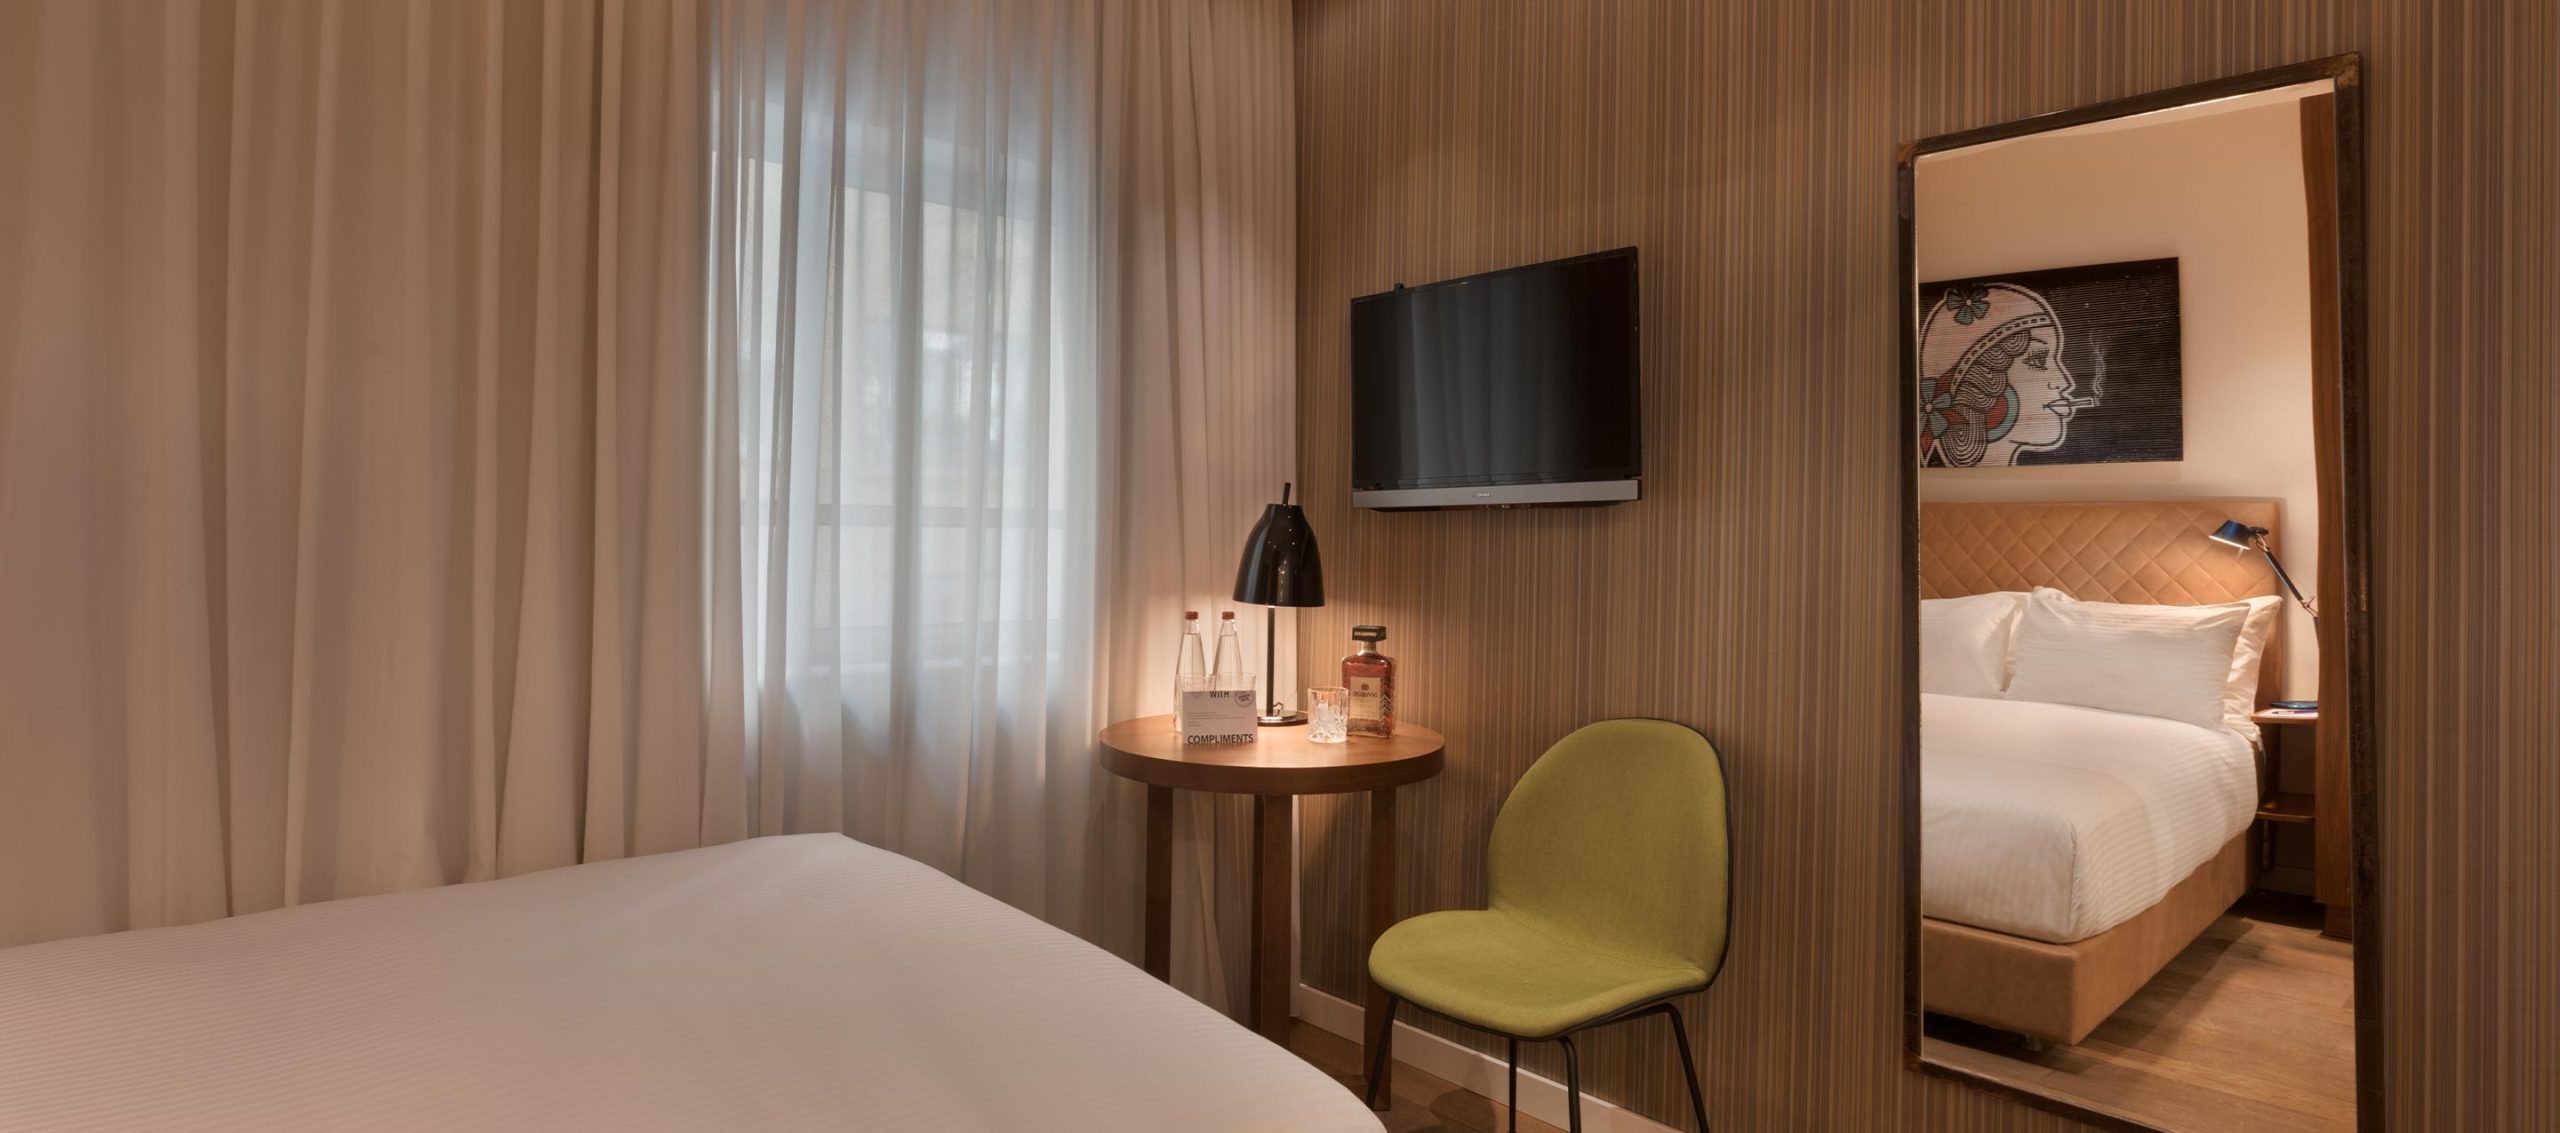 מלונות בתל אביב מגוון רב של טיפולי גוף בריאות ויופי במלונות חשוב להם לספק שירות